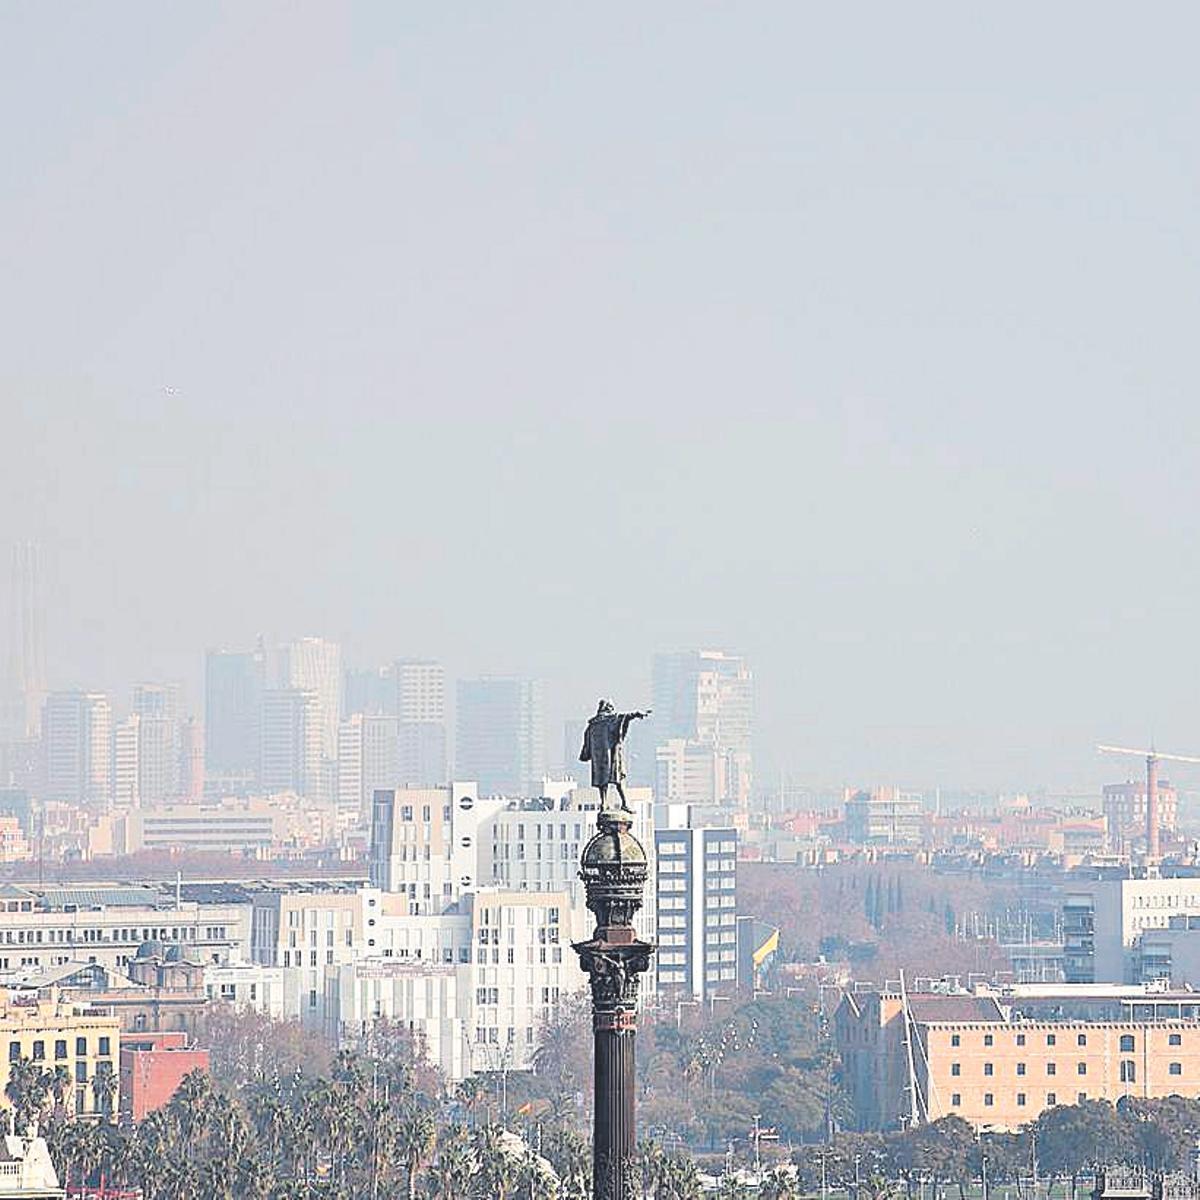 Efectos de la contaminación visible en el cielo de Barcelona, con la estatua de Colón en primer plano.